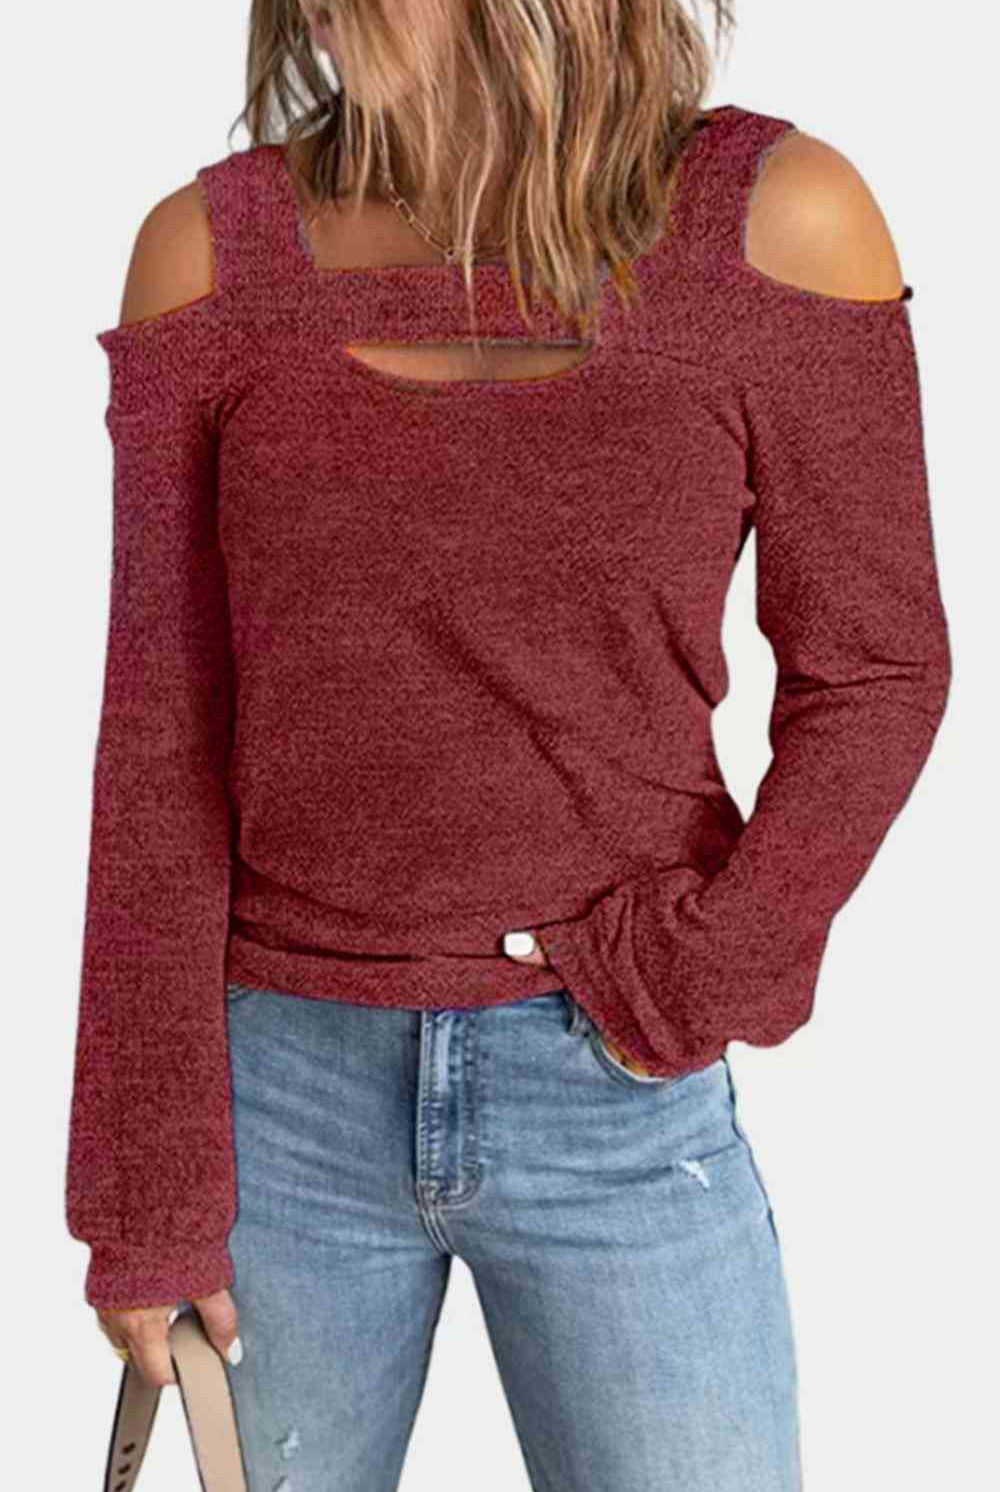 Saddle Brown Full Size Cutout Cold Shoulder Blouse Plus Size Clothes